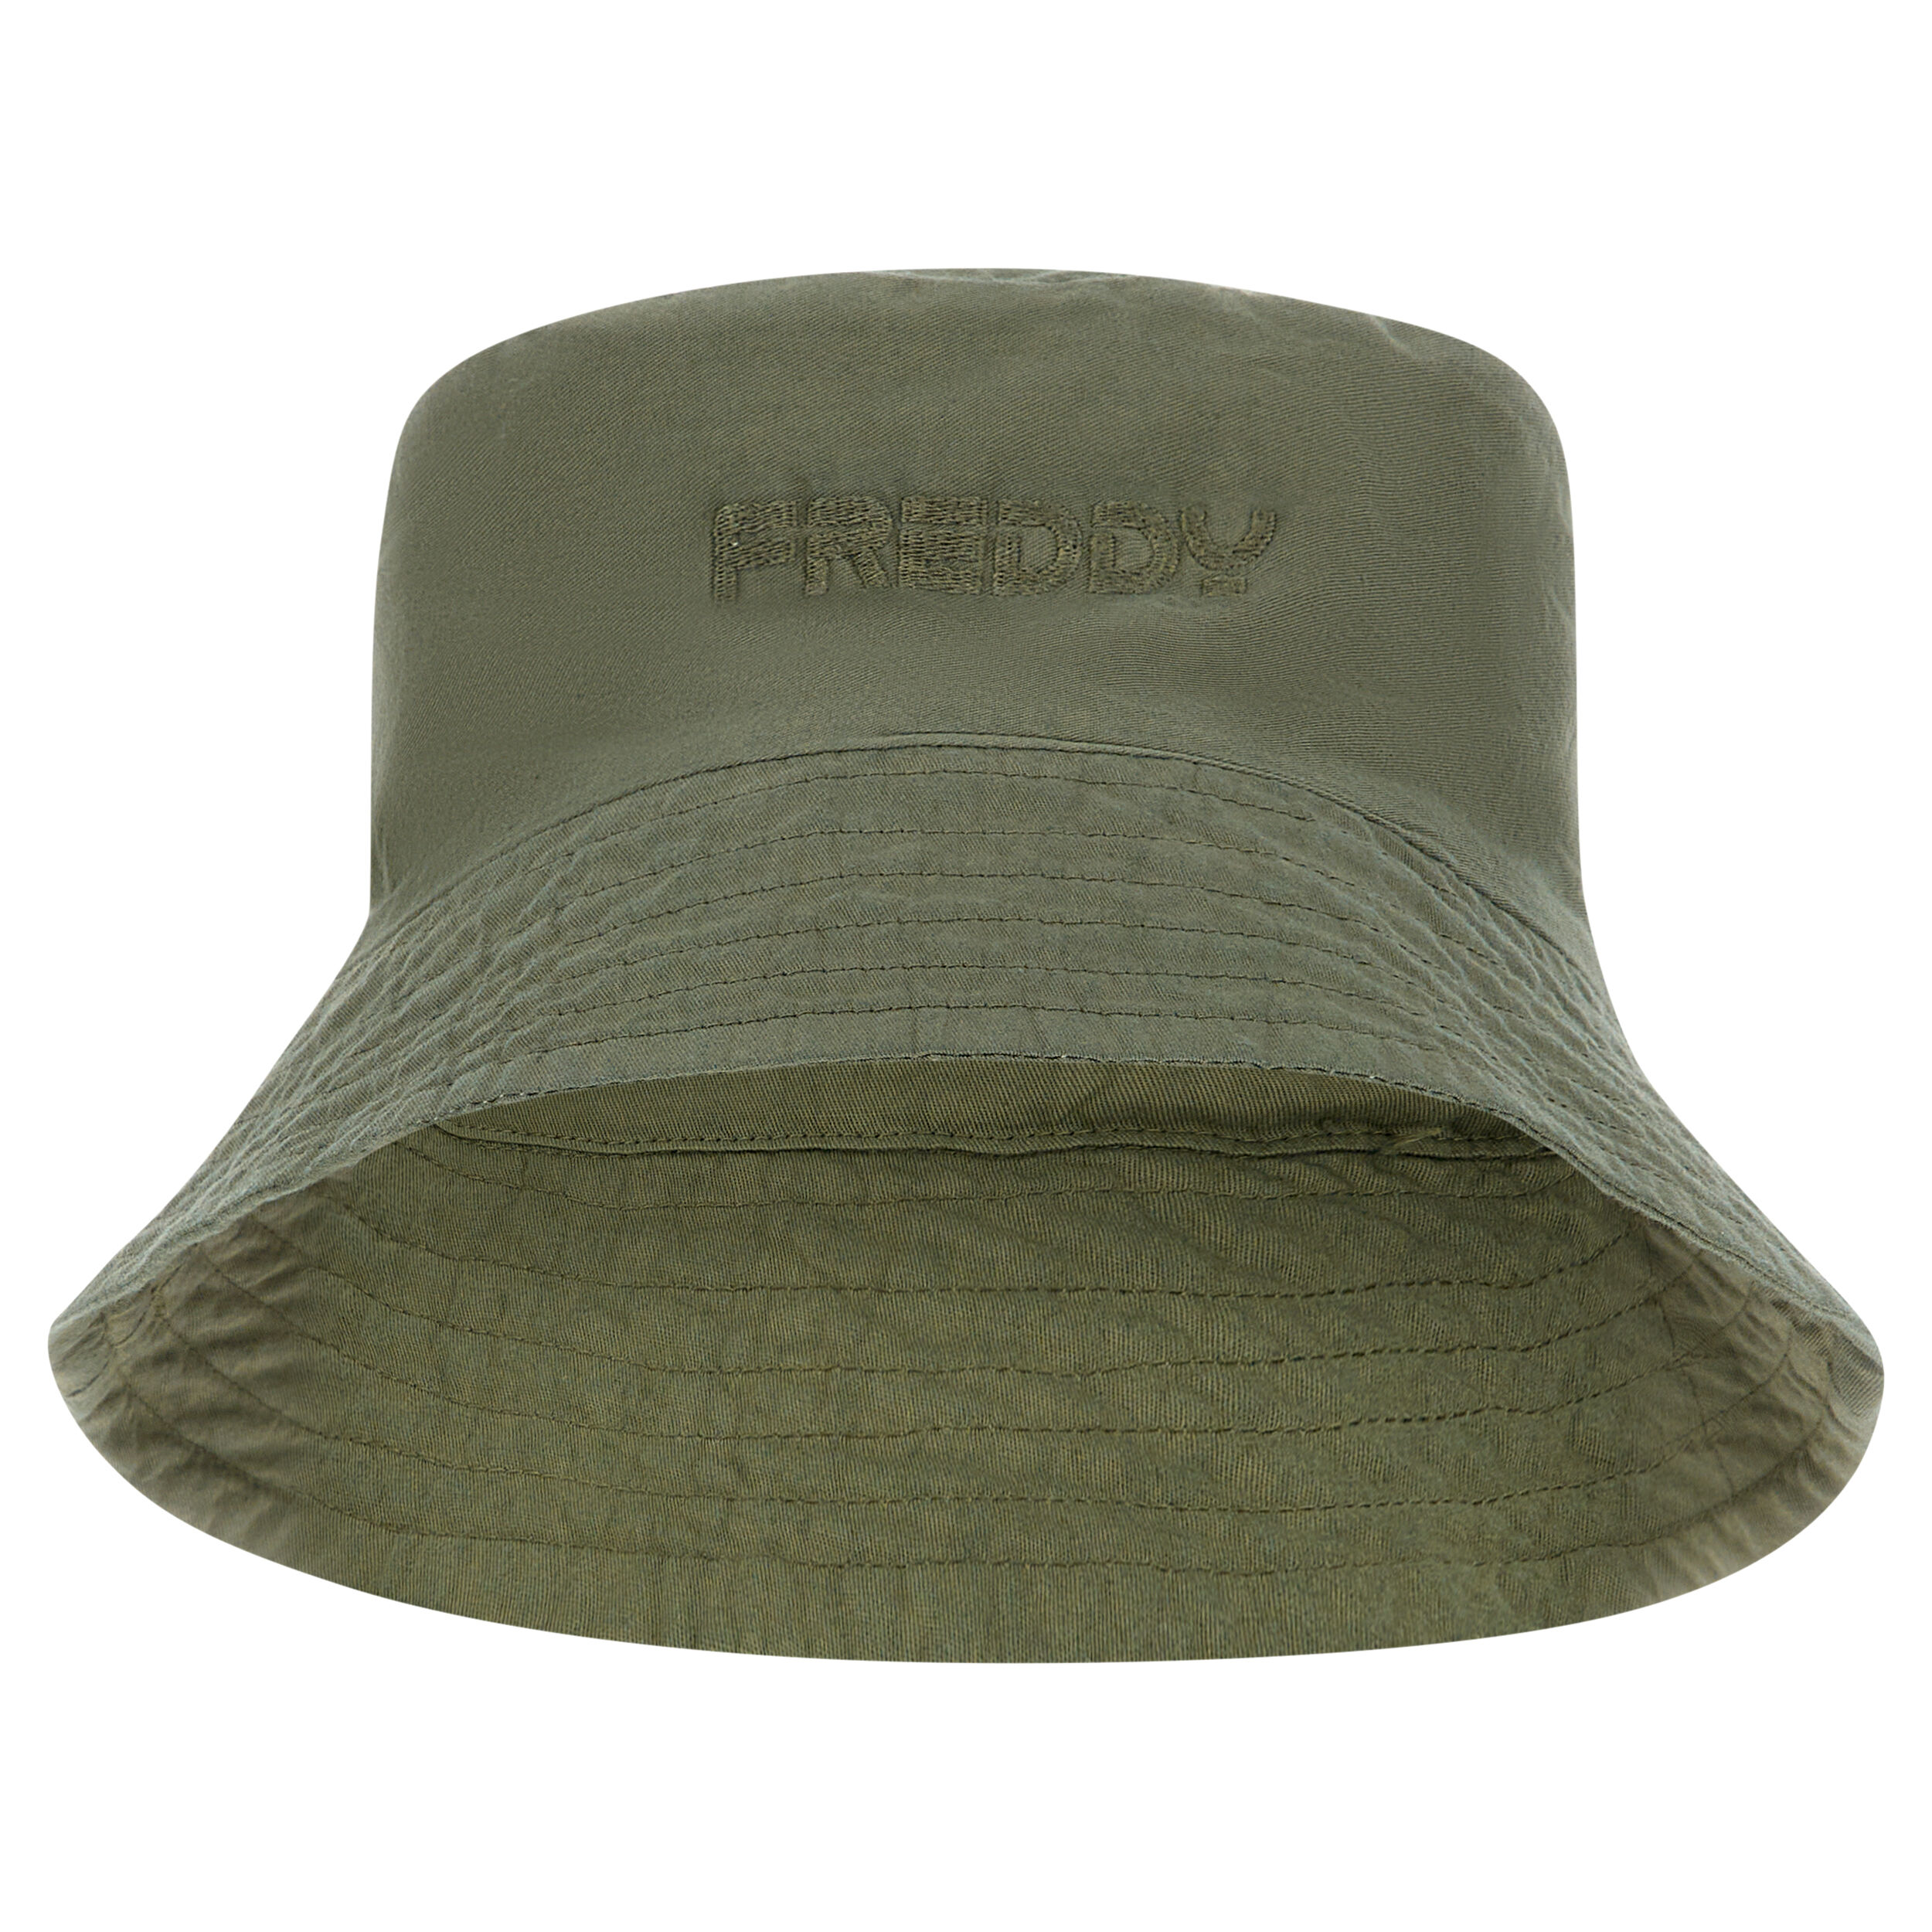 freddy cappello bucket hat con logo  ricamato in tono verde pigmentato donna unica